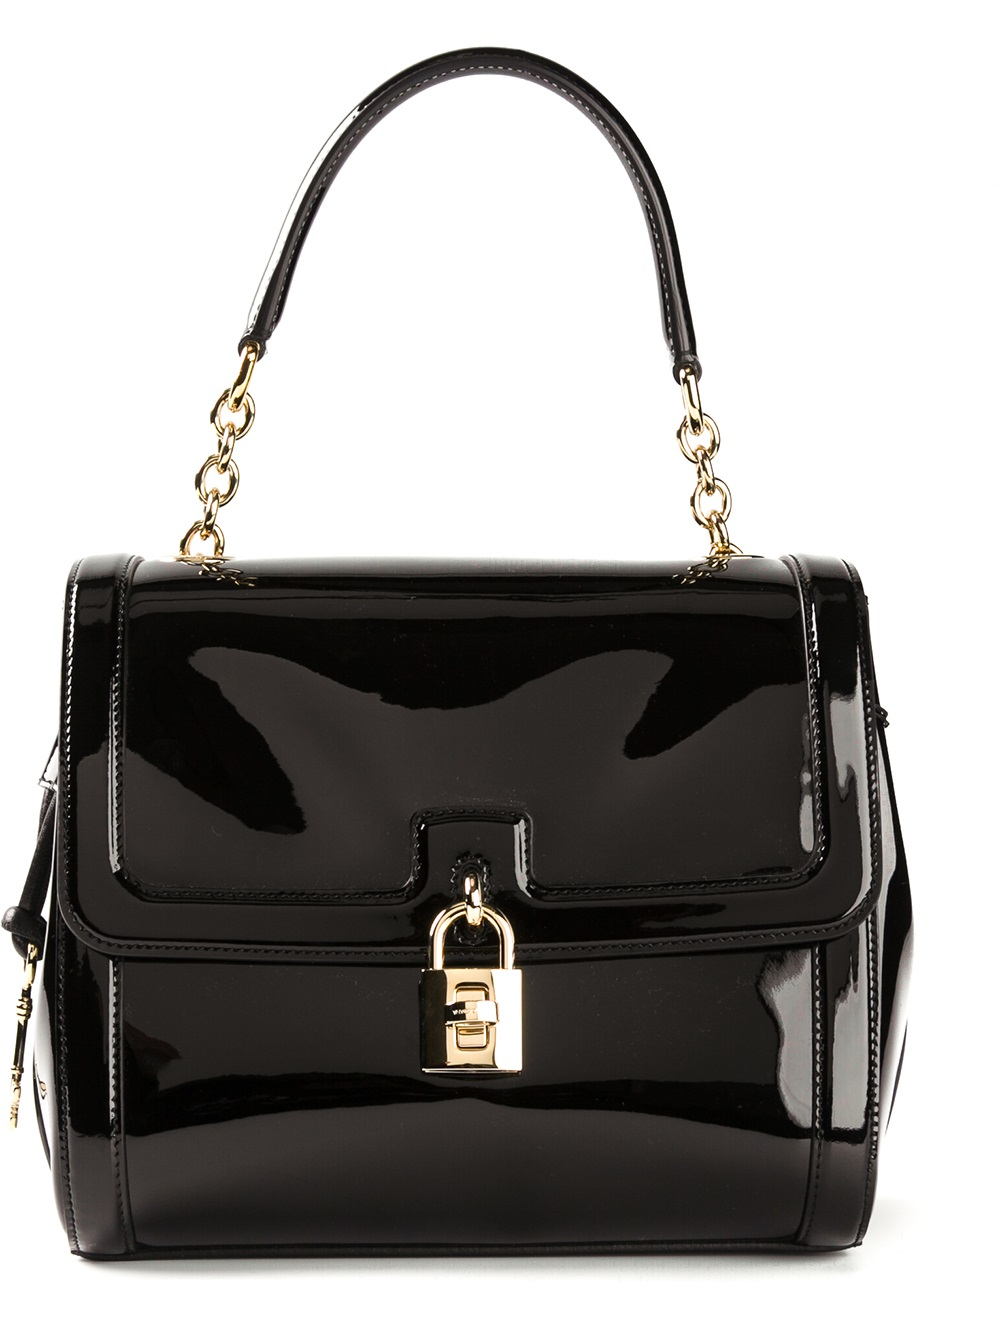 Lyst - Dolce & Gabbana Miss Dolce Shoulder Bag in Black